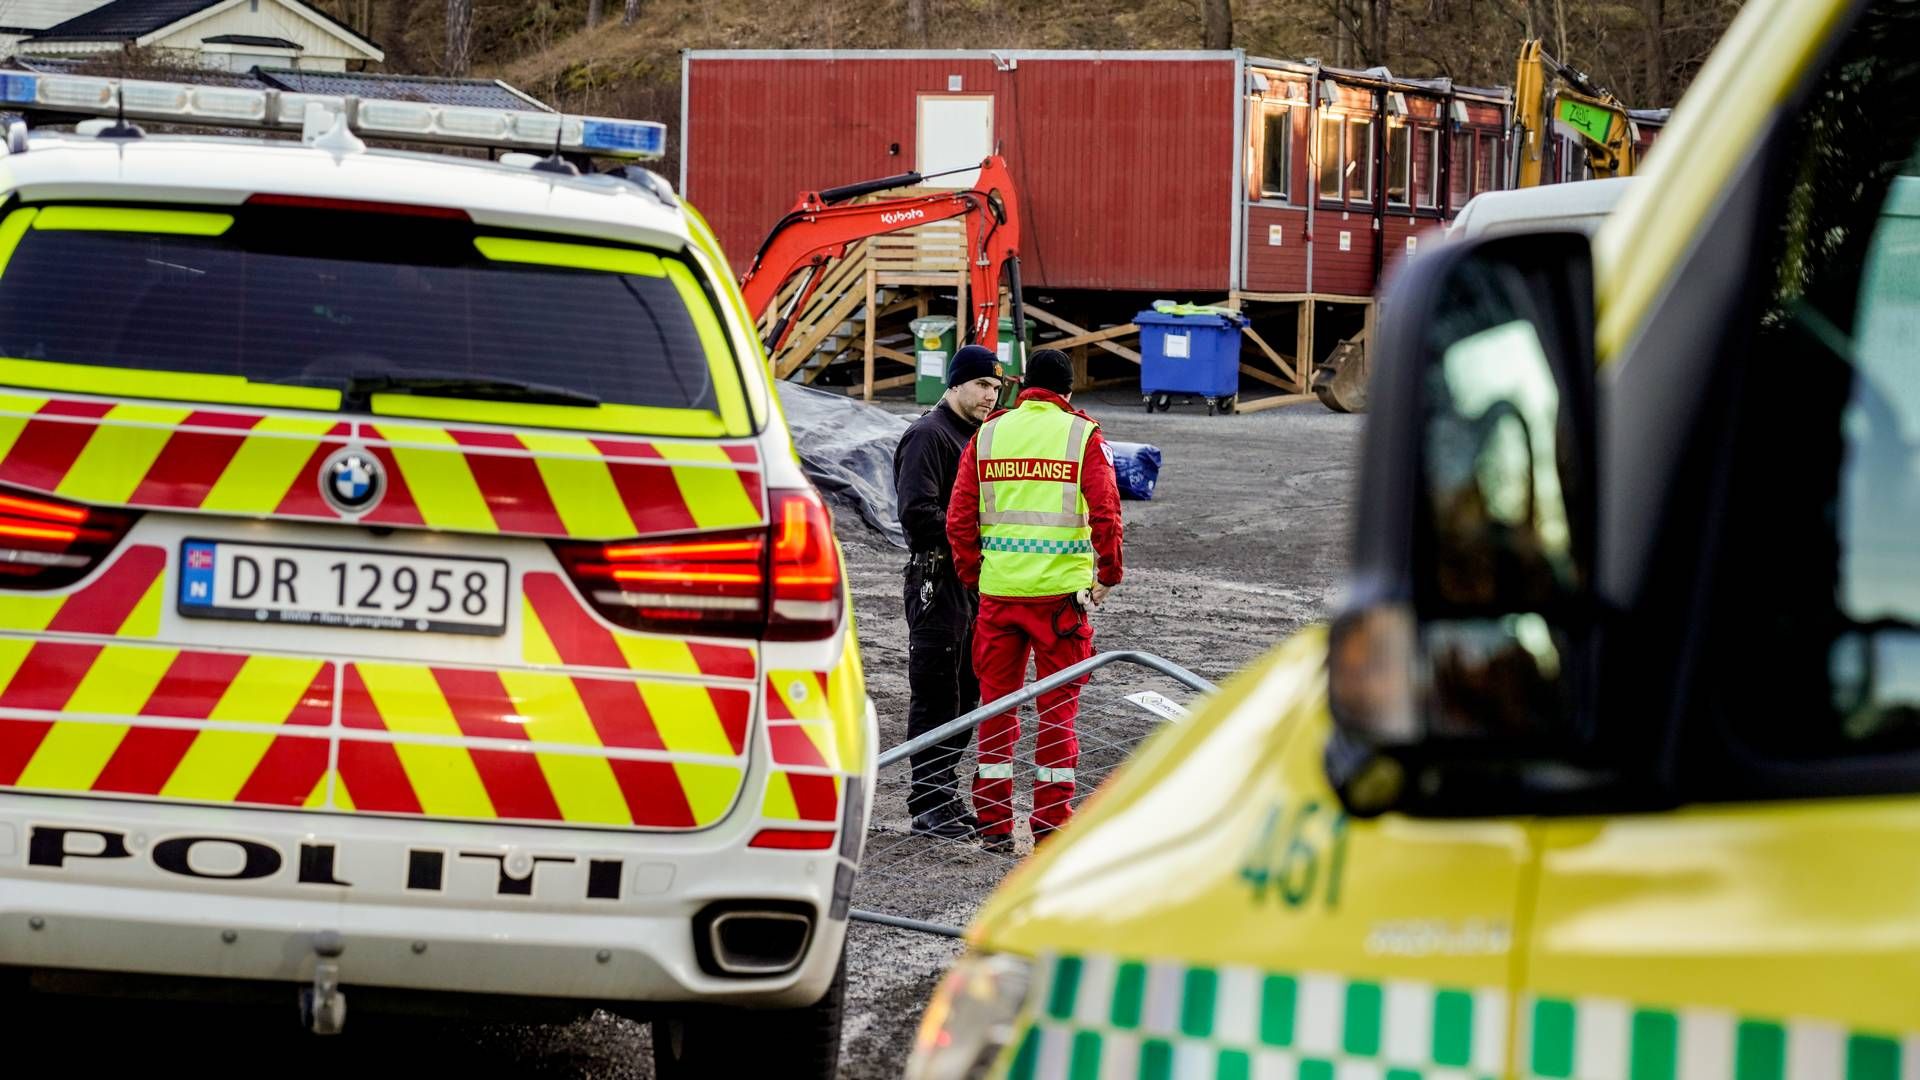 Hittil i år har det vært flere ulykker med personskade enn i samme periode i fjor. Utviklingen bekymrer Gjensidige. | Foto: Foto: Ole Berg-Rusten / NTB